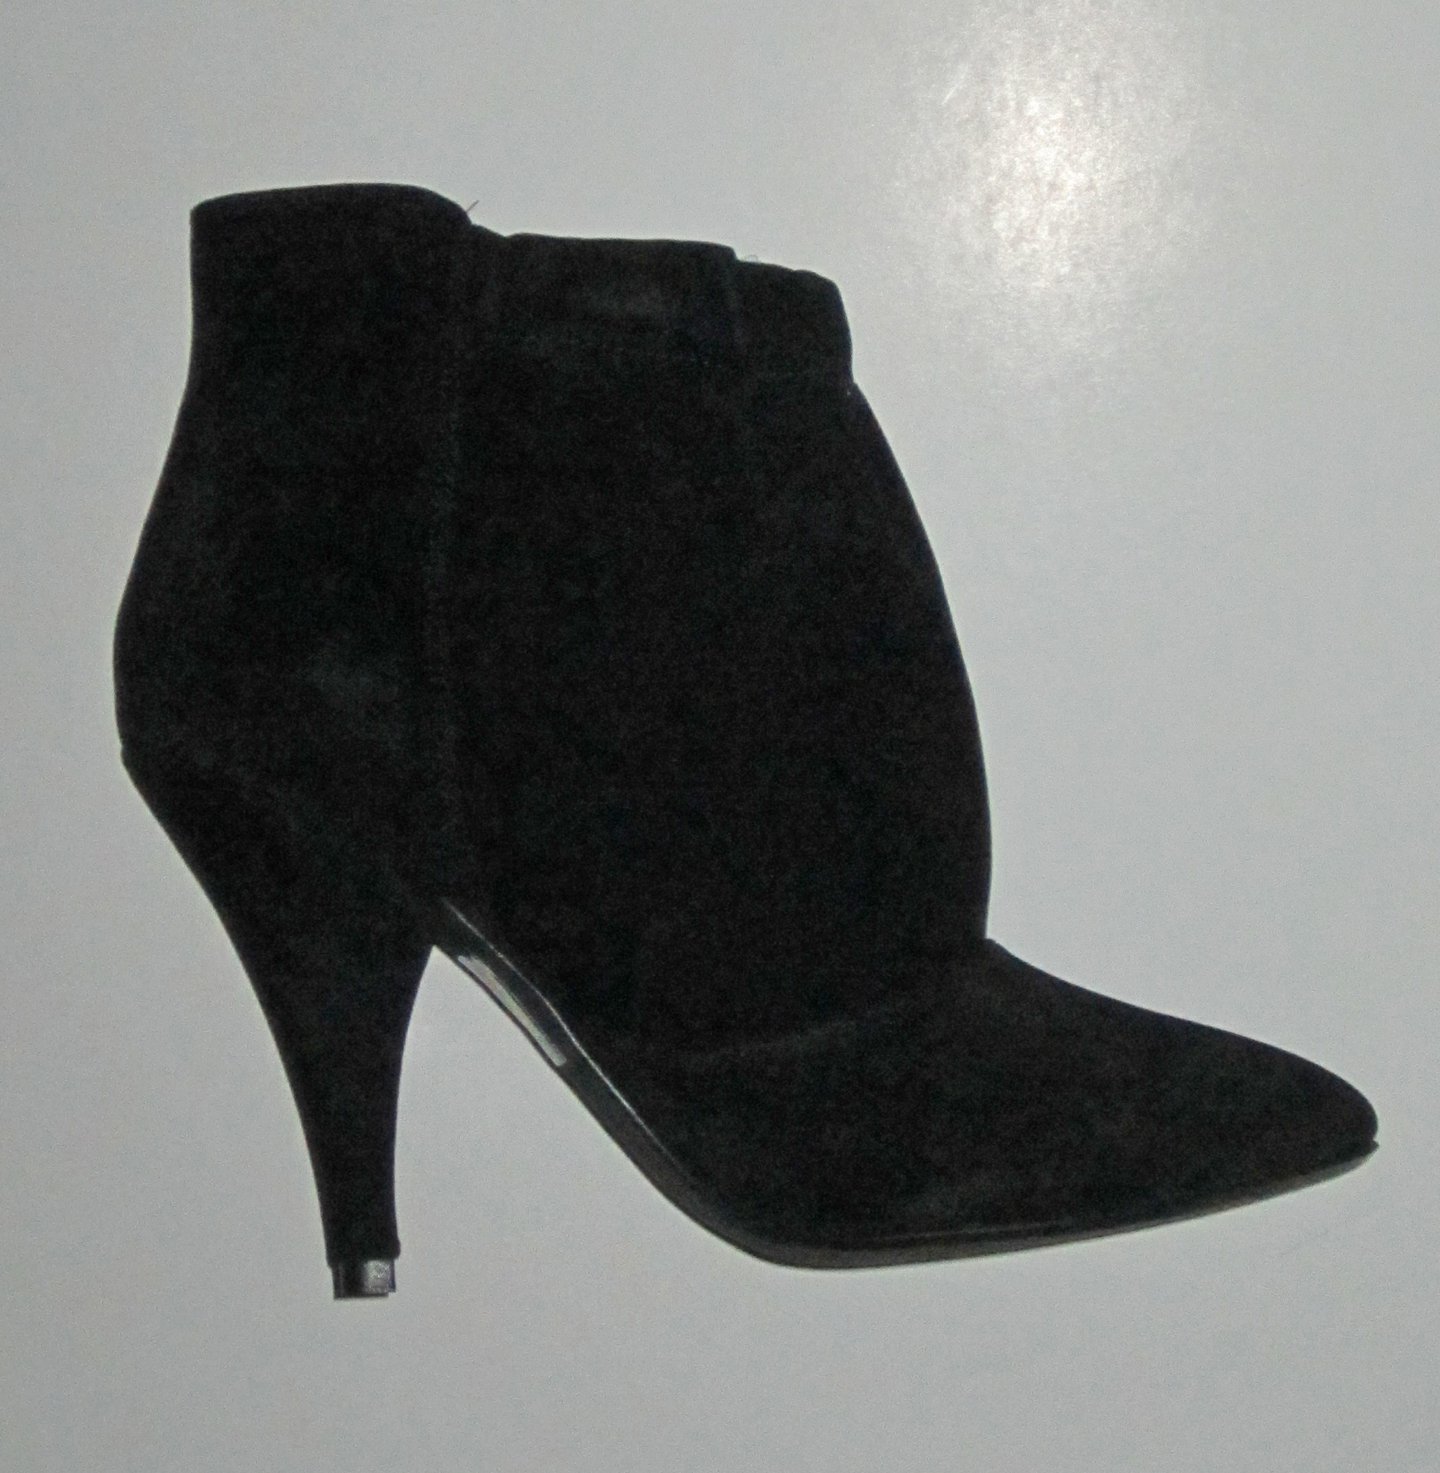 Victoria's Secret $108 Black Suede Bootie Boots 8.5 280923